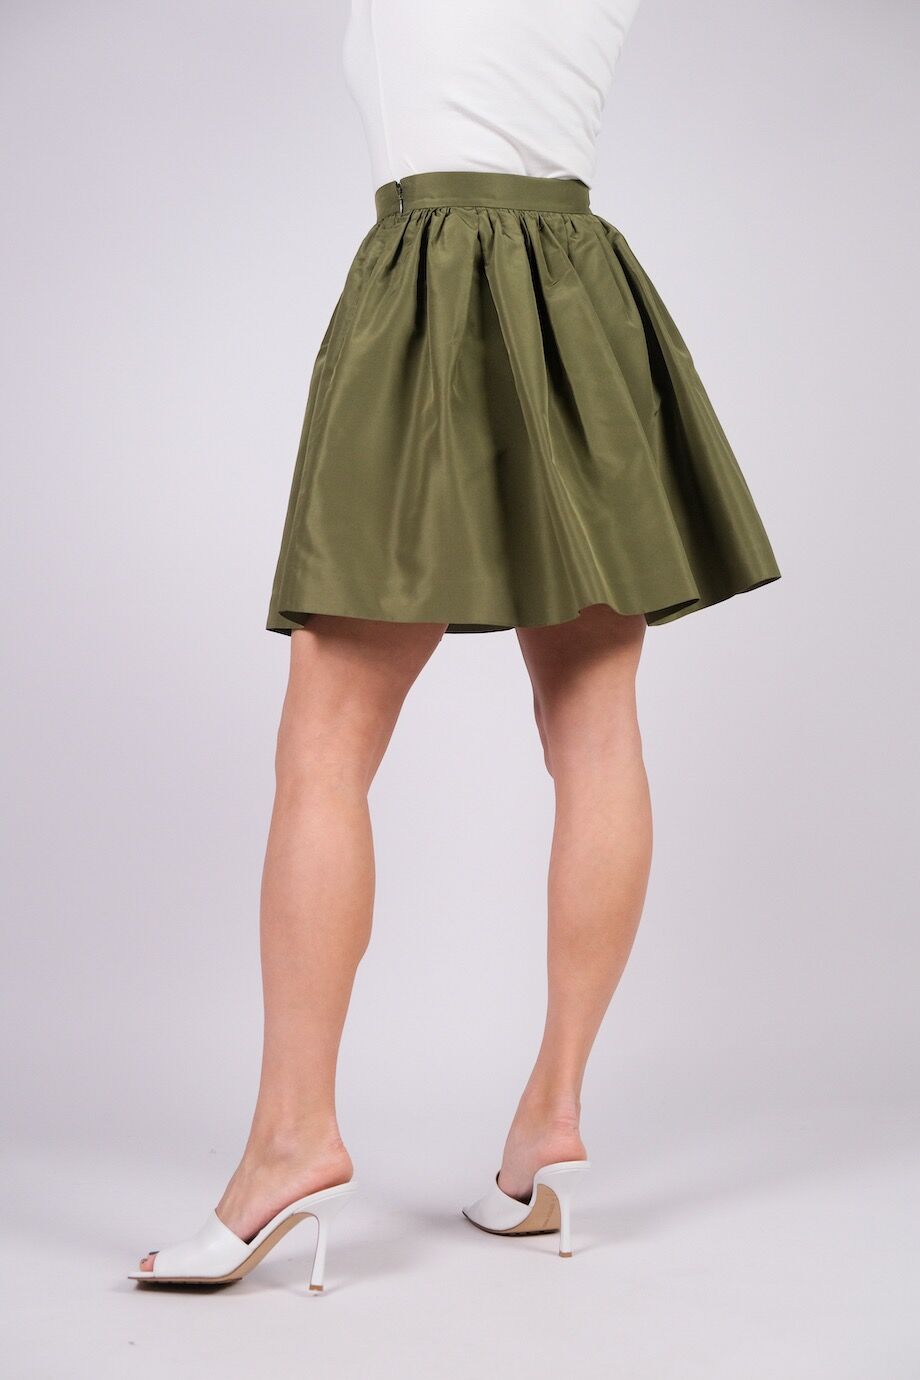 image 4 Шелковая юбка пышного кроя выше колена